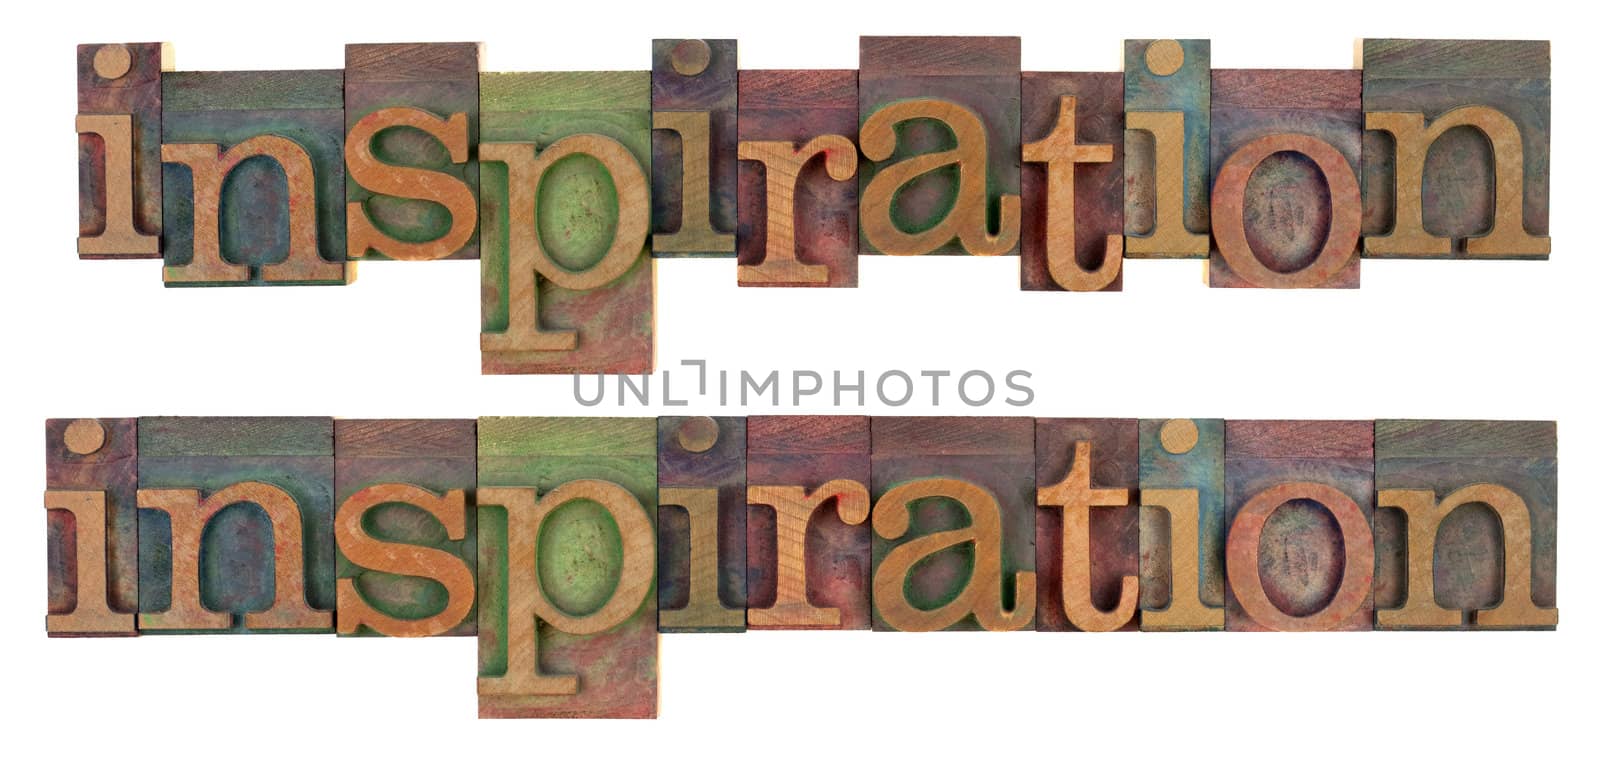 inspiration word in wooden letterpress type by PixelsAway